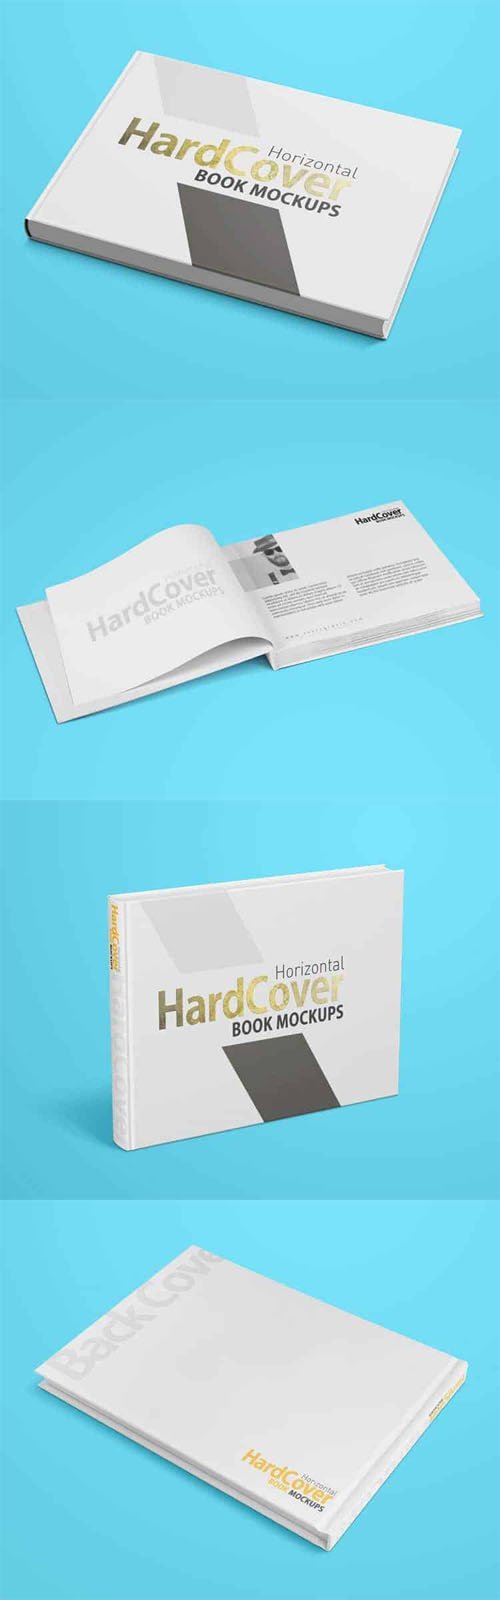 Horizontal HardCover Book PSD Mockups Templates